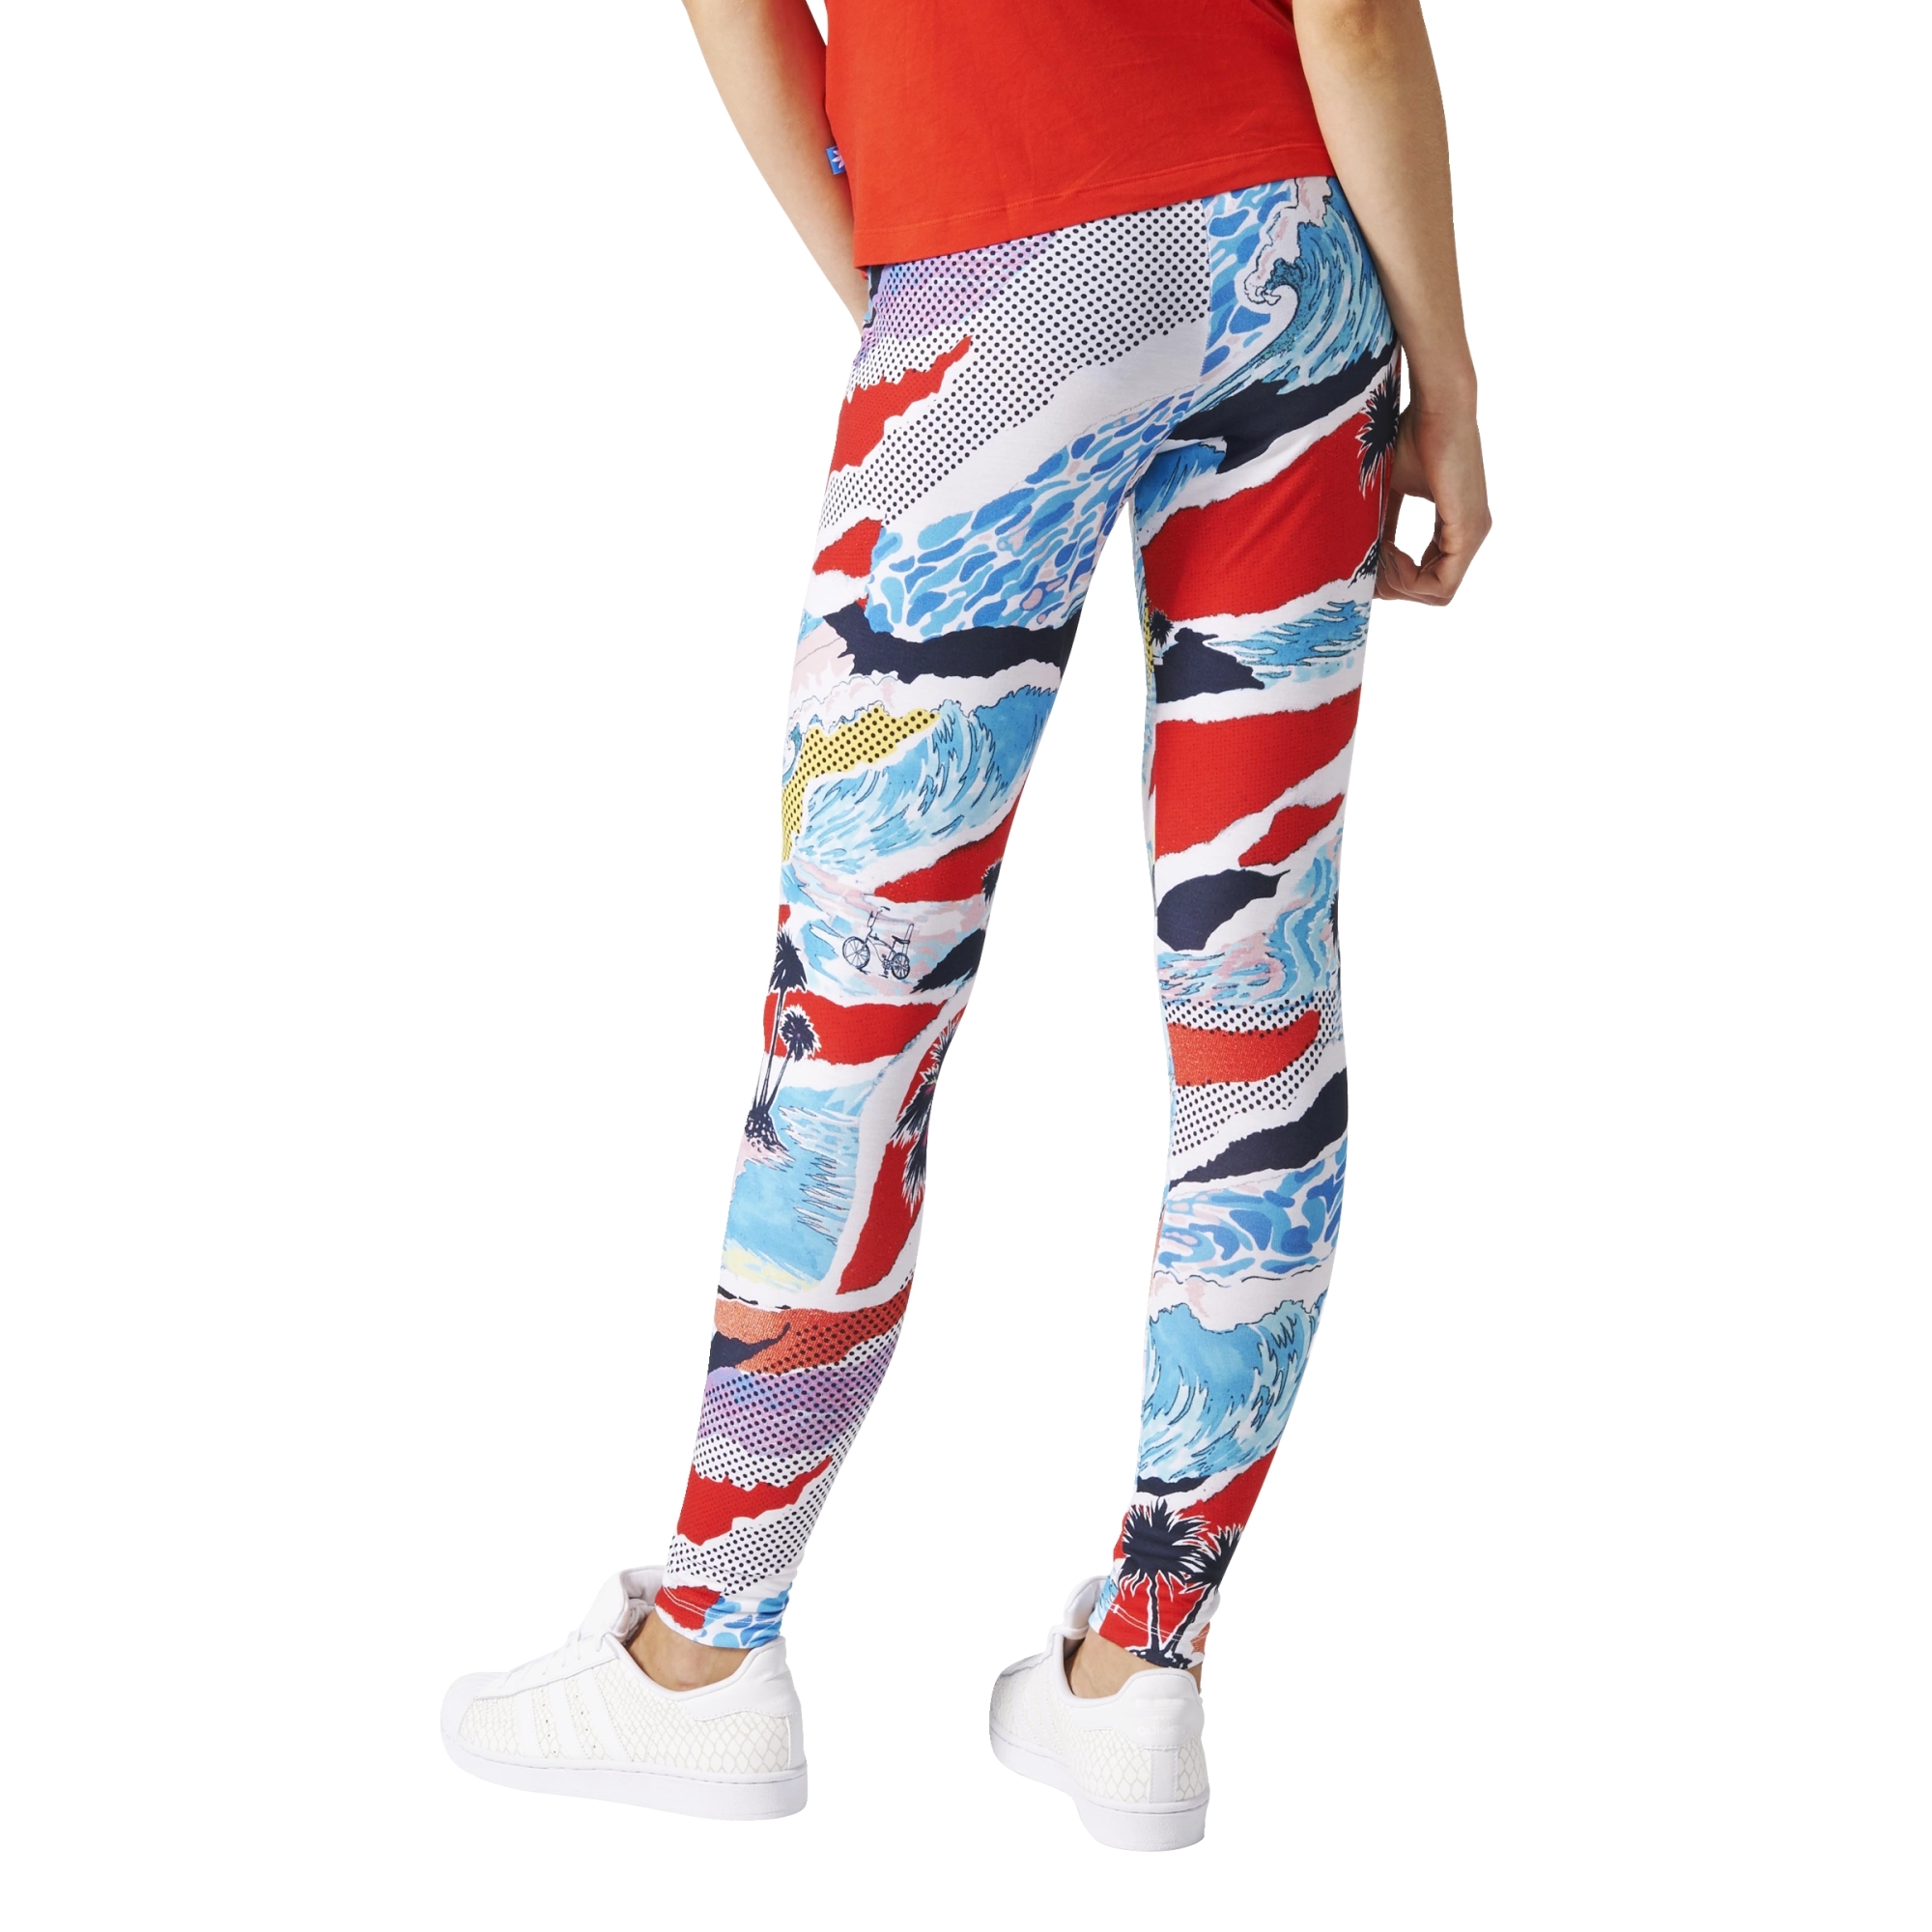 Hazme La nuestra Chillido Adidas Originals Linear Leggings "Venice Beach" (multicolor)